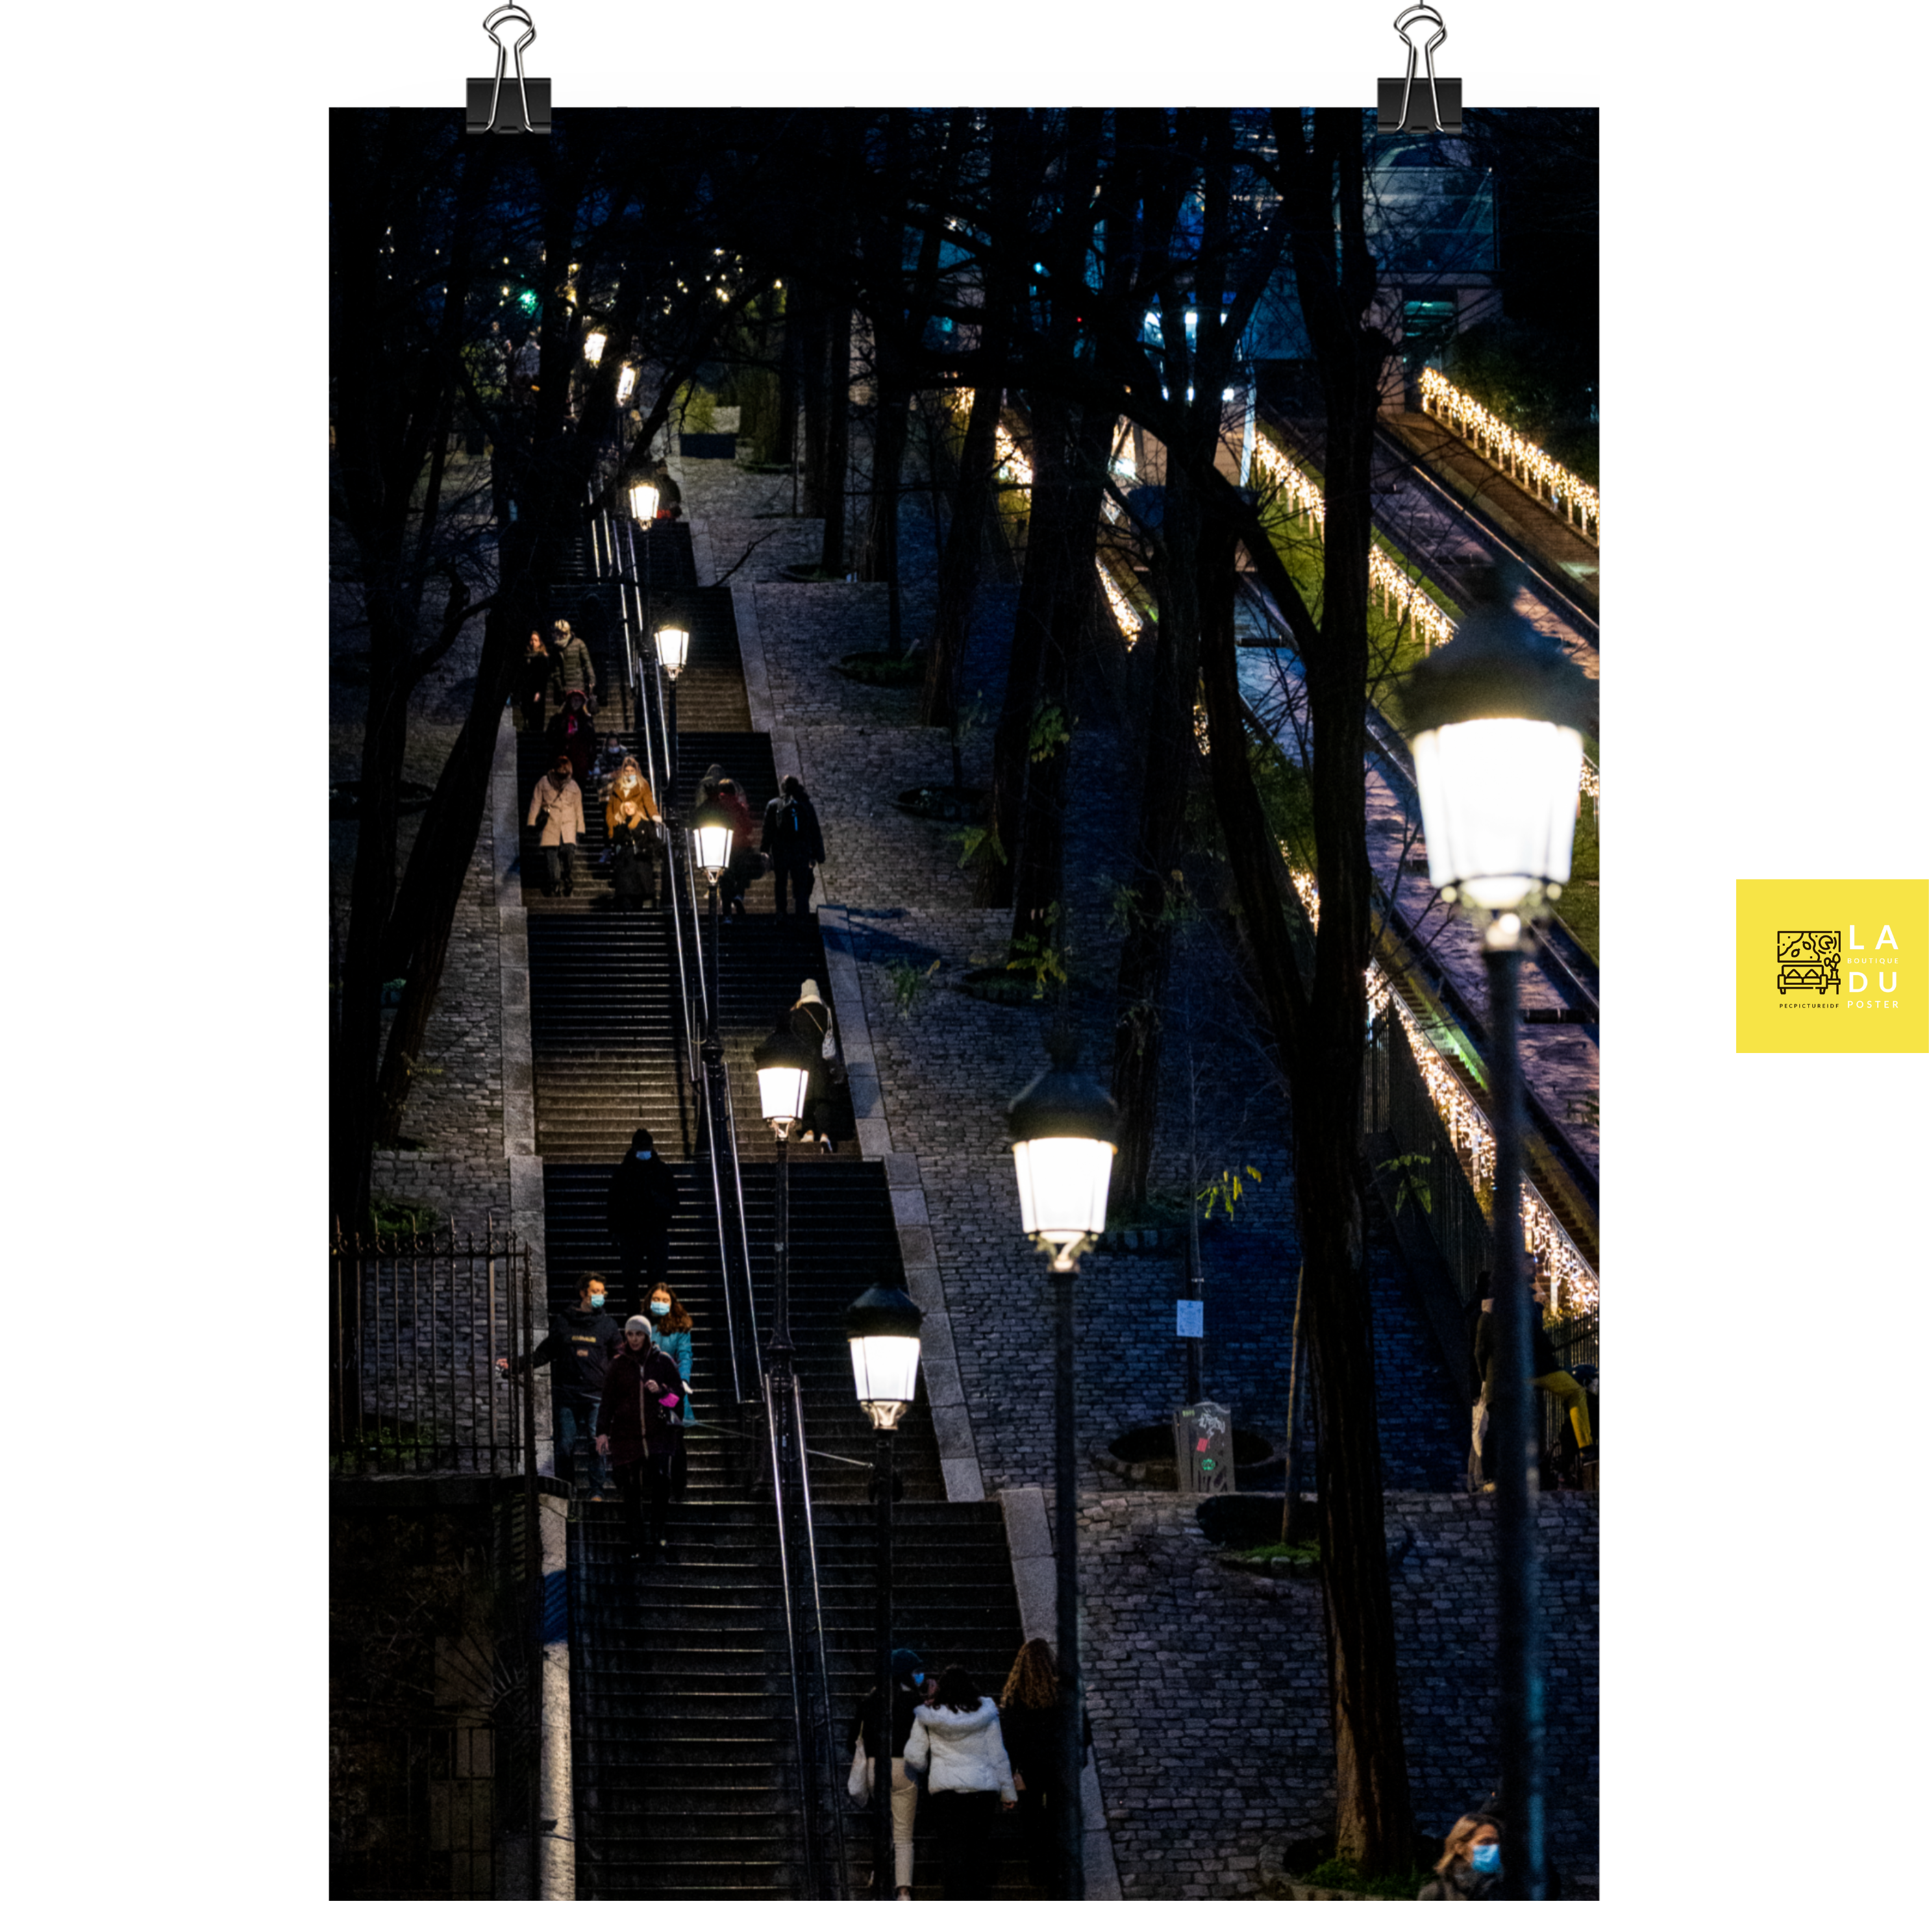 Promenade du soir - Poster - La boutique du poster Français